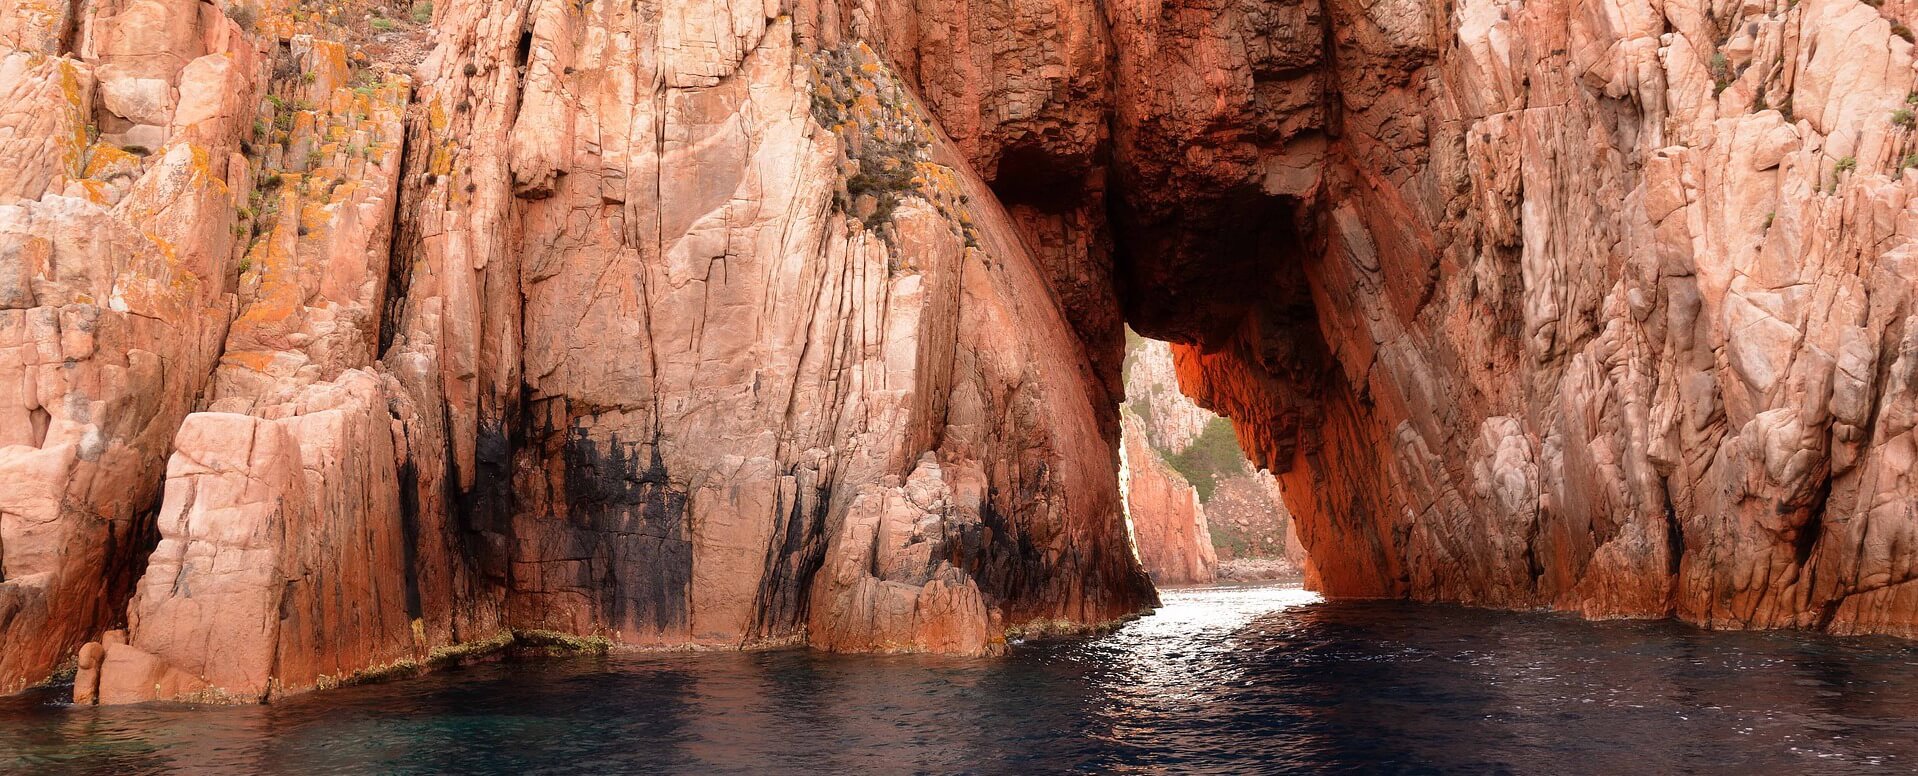 Découvrez les plus beaux espaces naturels en Corse - Corse